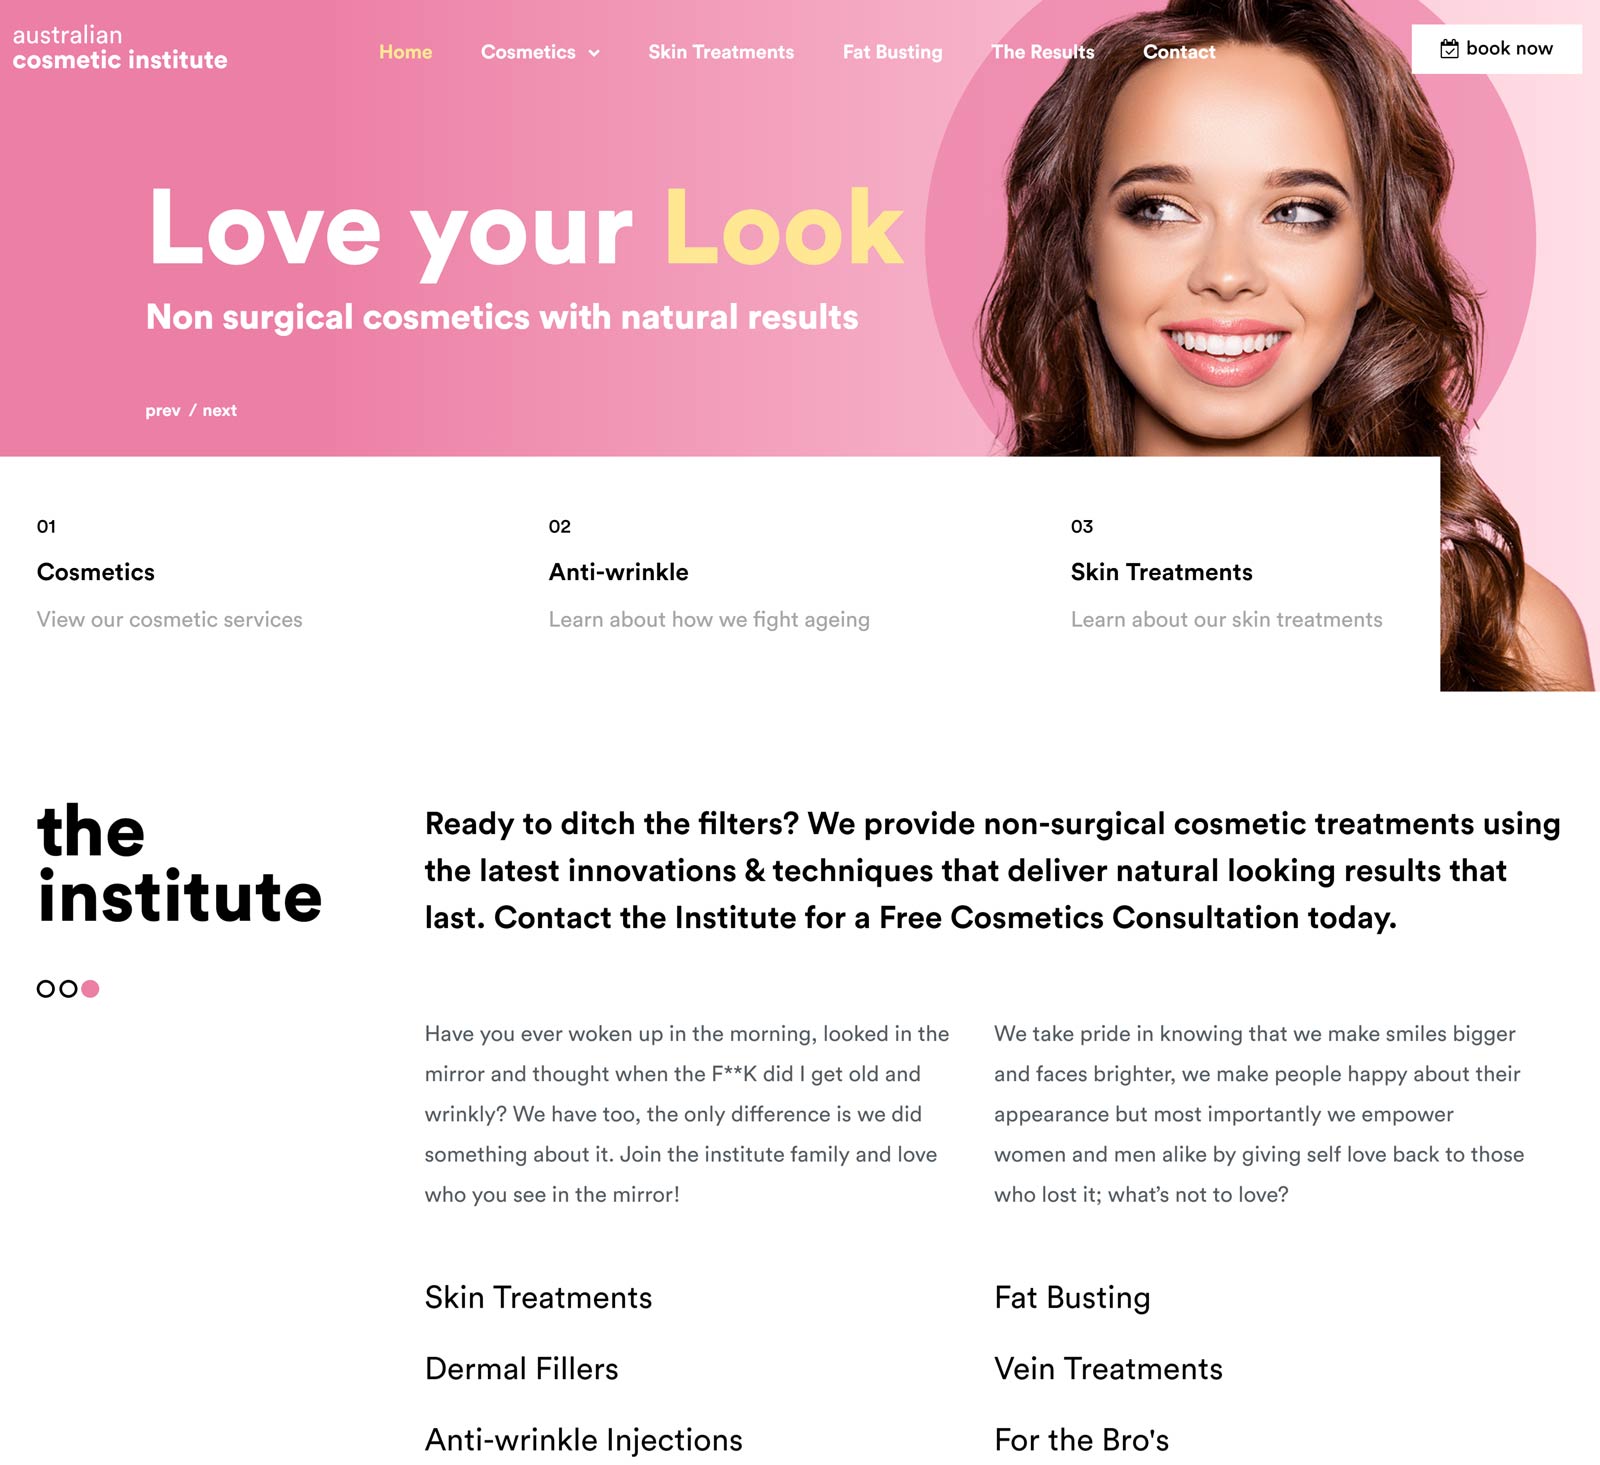 Australian Cosmetic Institute